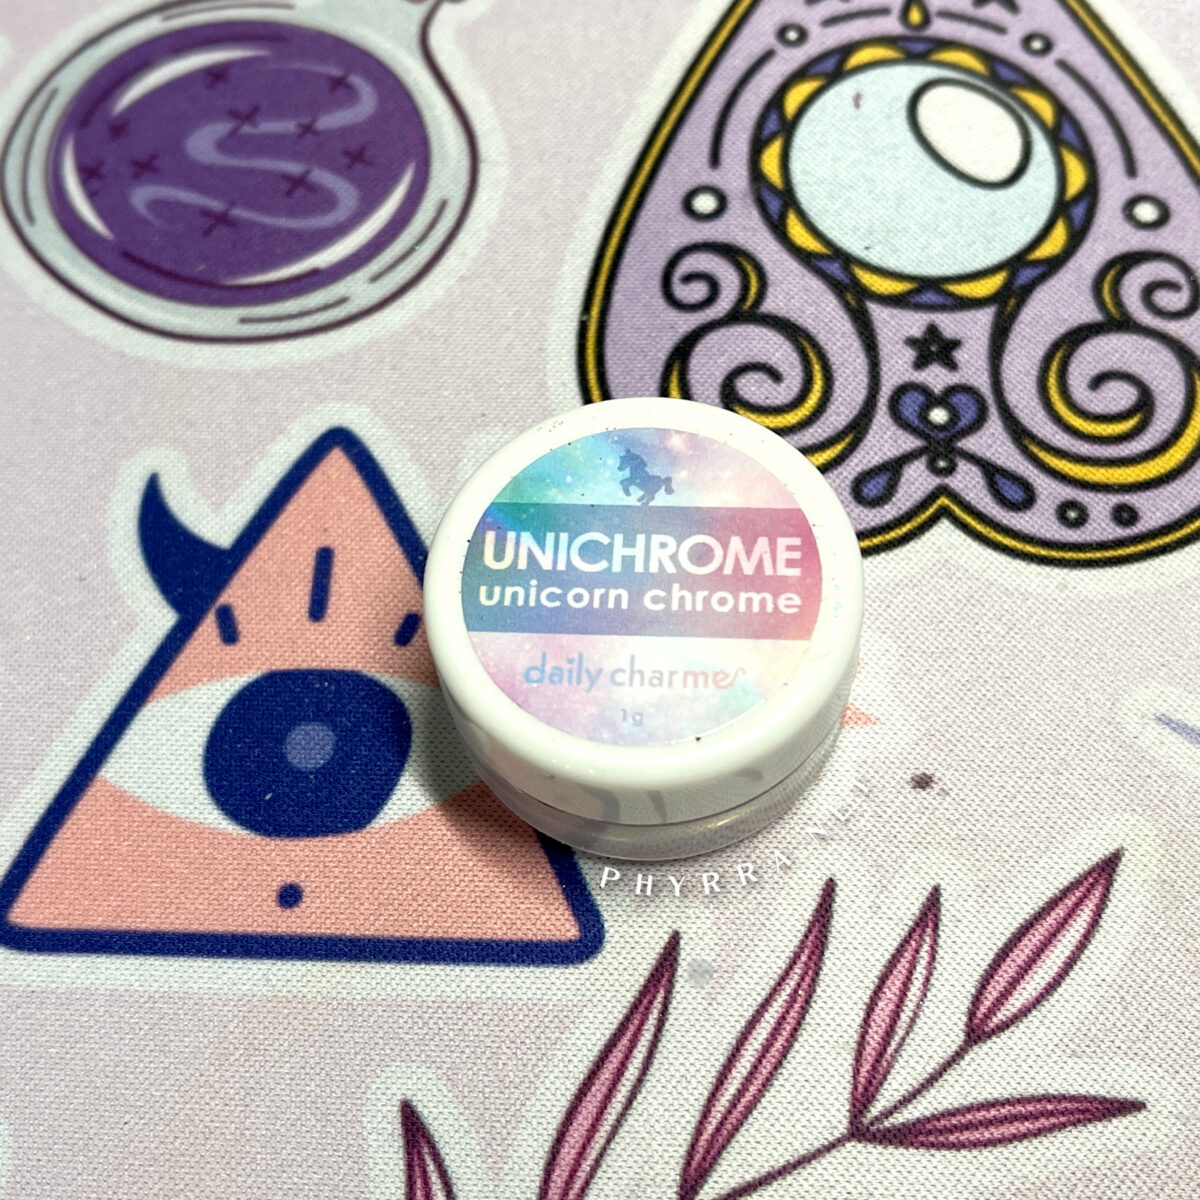 jar of Daily Charme Unichrome Unicorn Powder